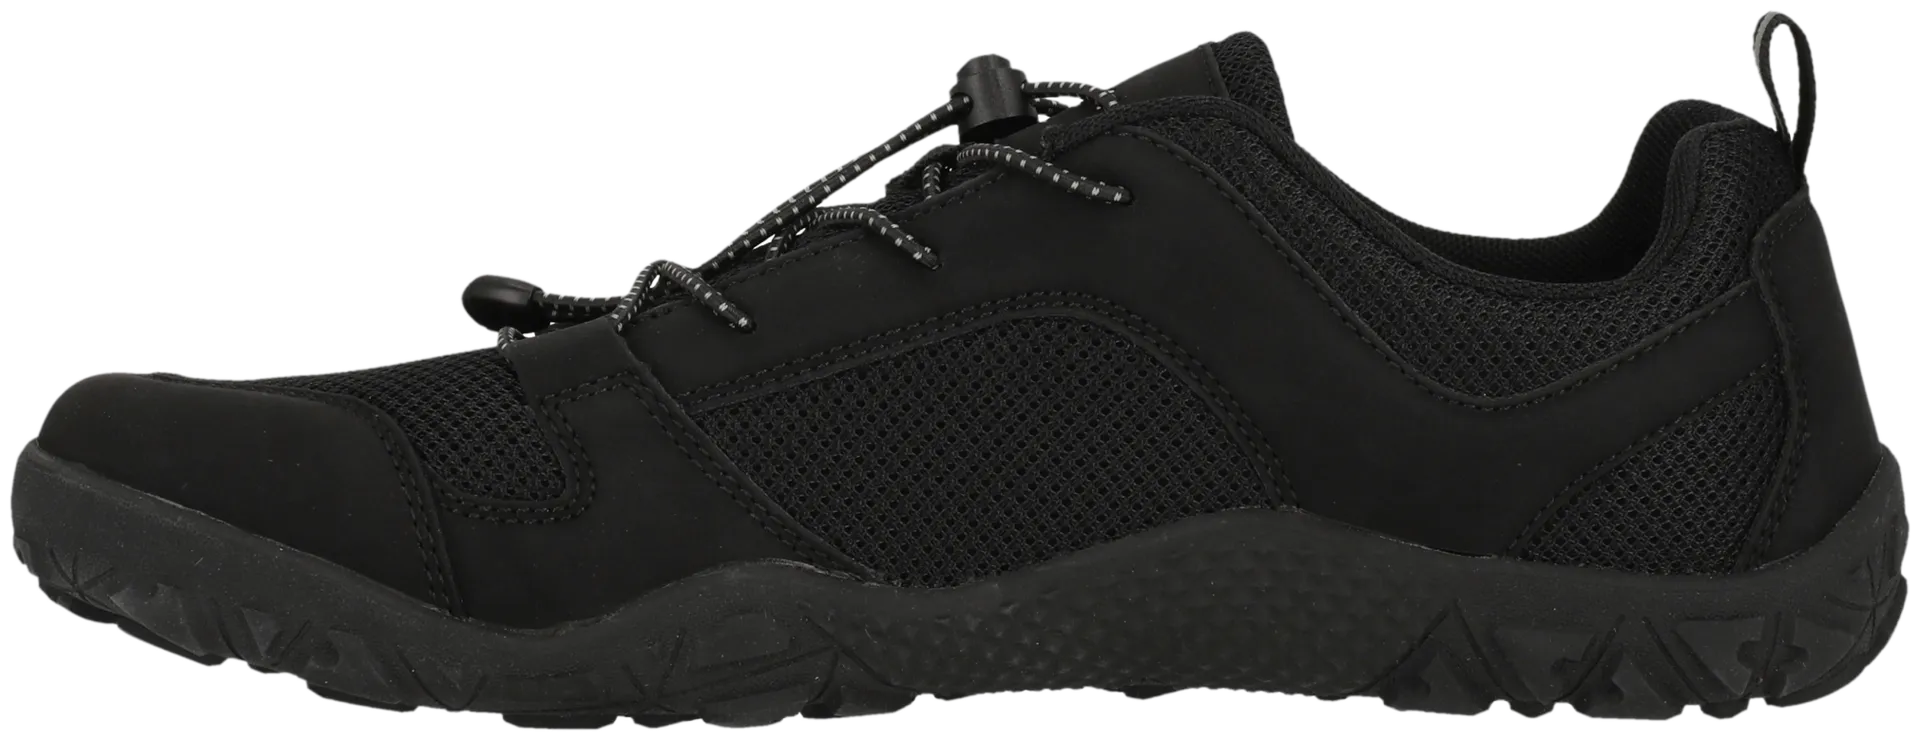 Endurance paljasjalkakenkä Kendy Barefoot Shoe unisex - 1001S Black Solid - 2